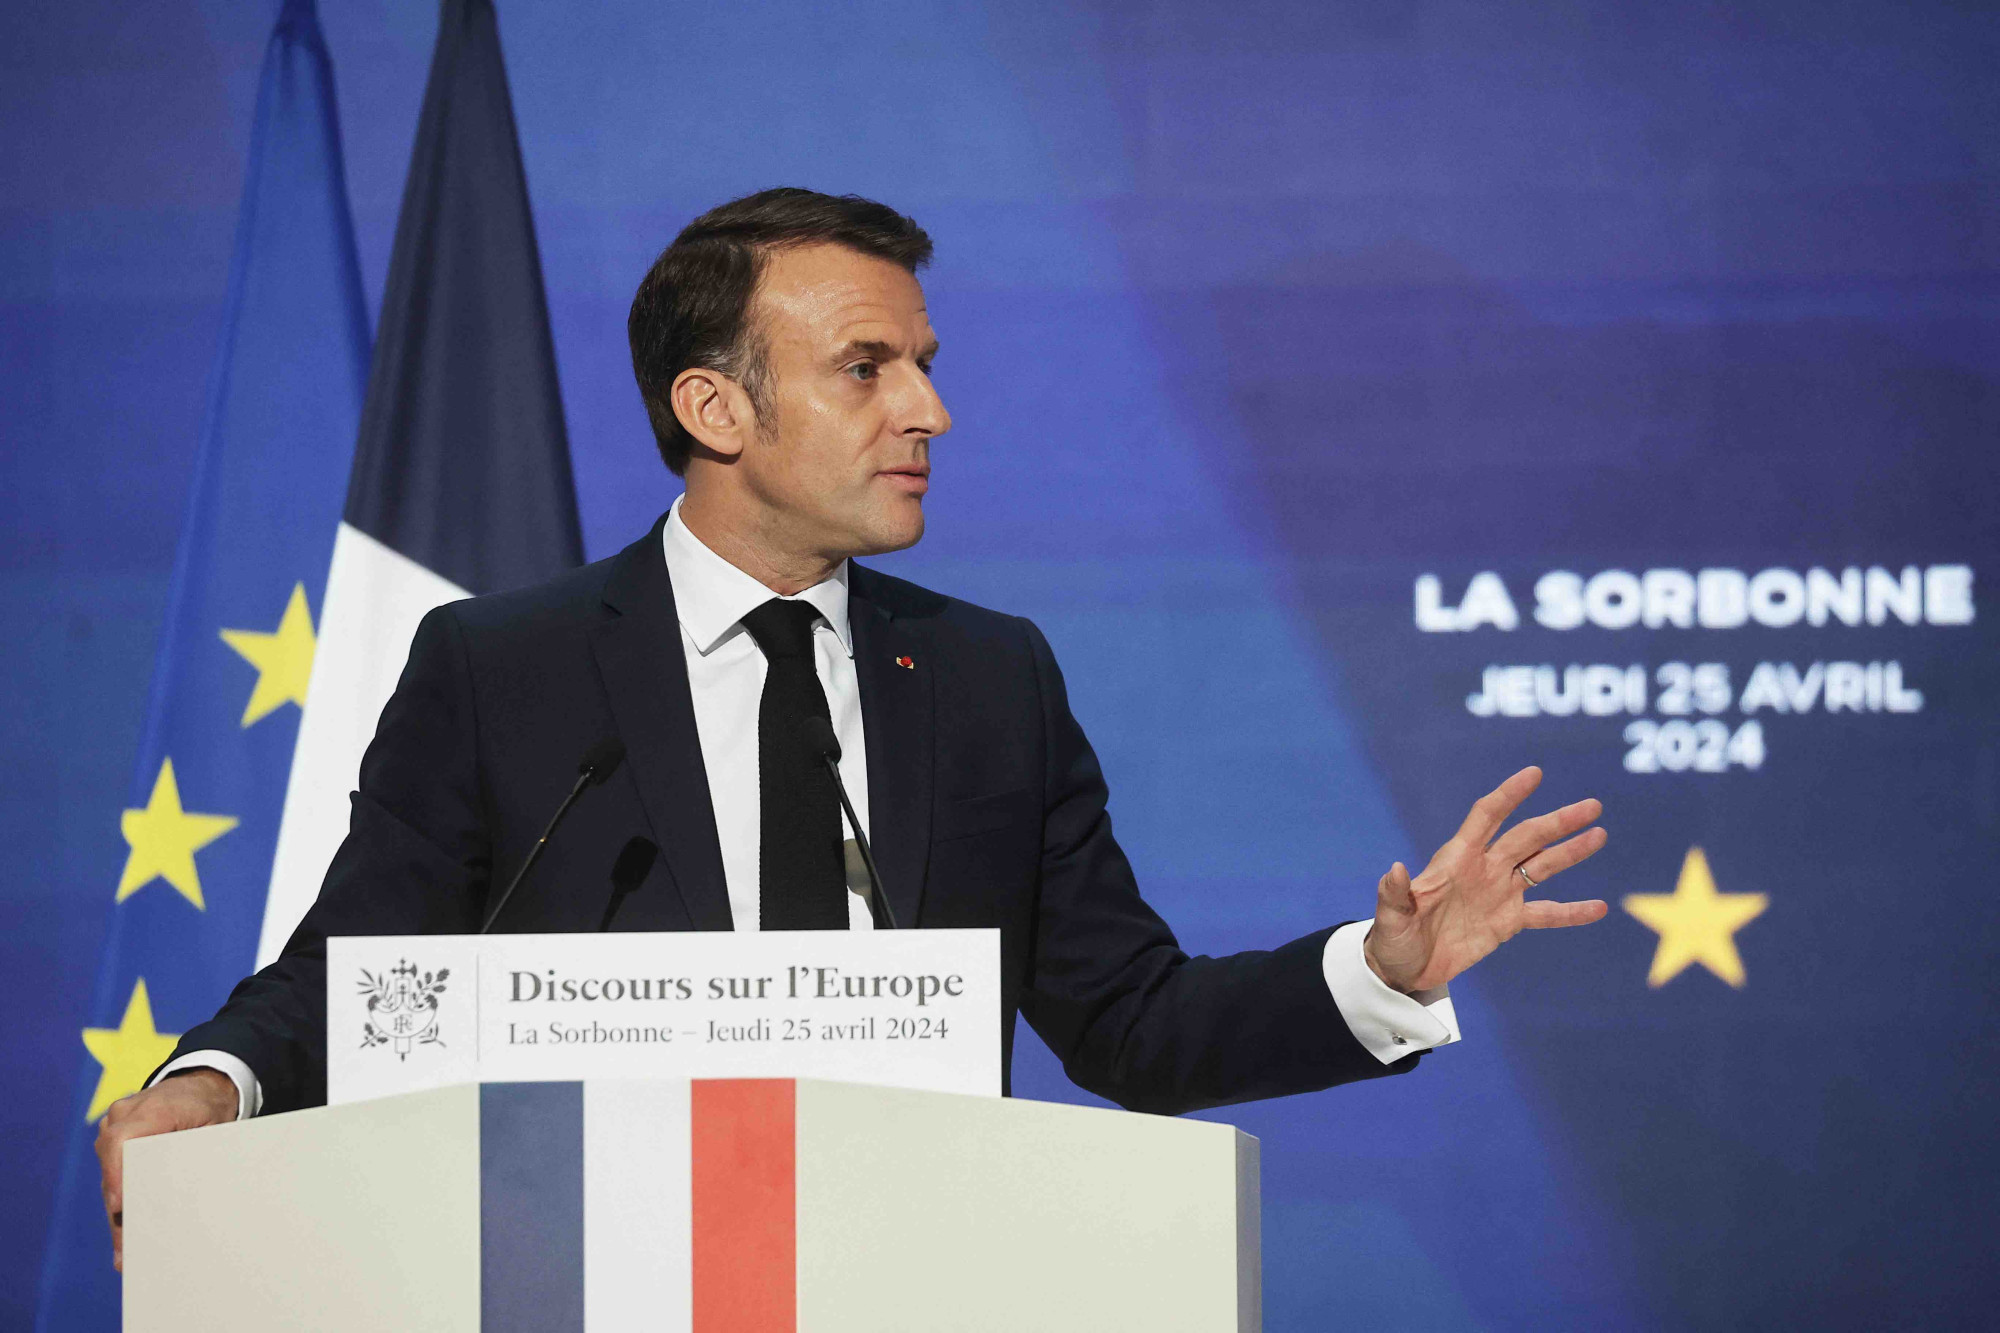 Emmanuel Macron dresse un portrait alarmiste de l'Europe à la Sorbonne : une "hypocrisie terrible" selon les oppositions